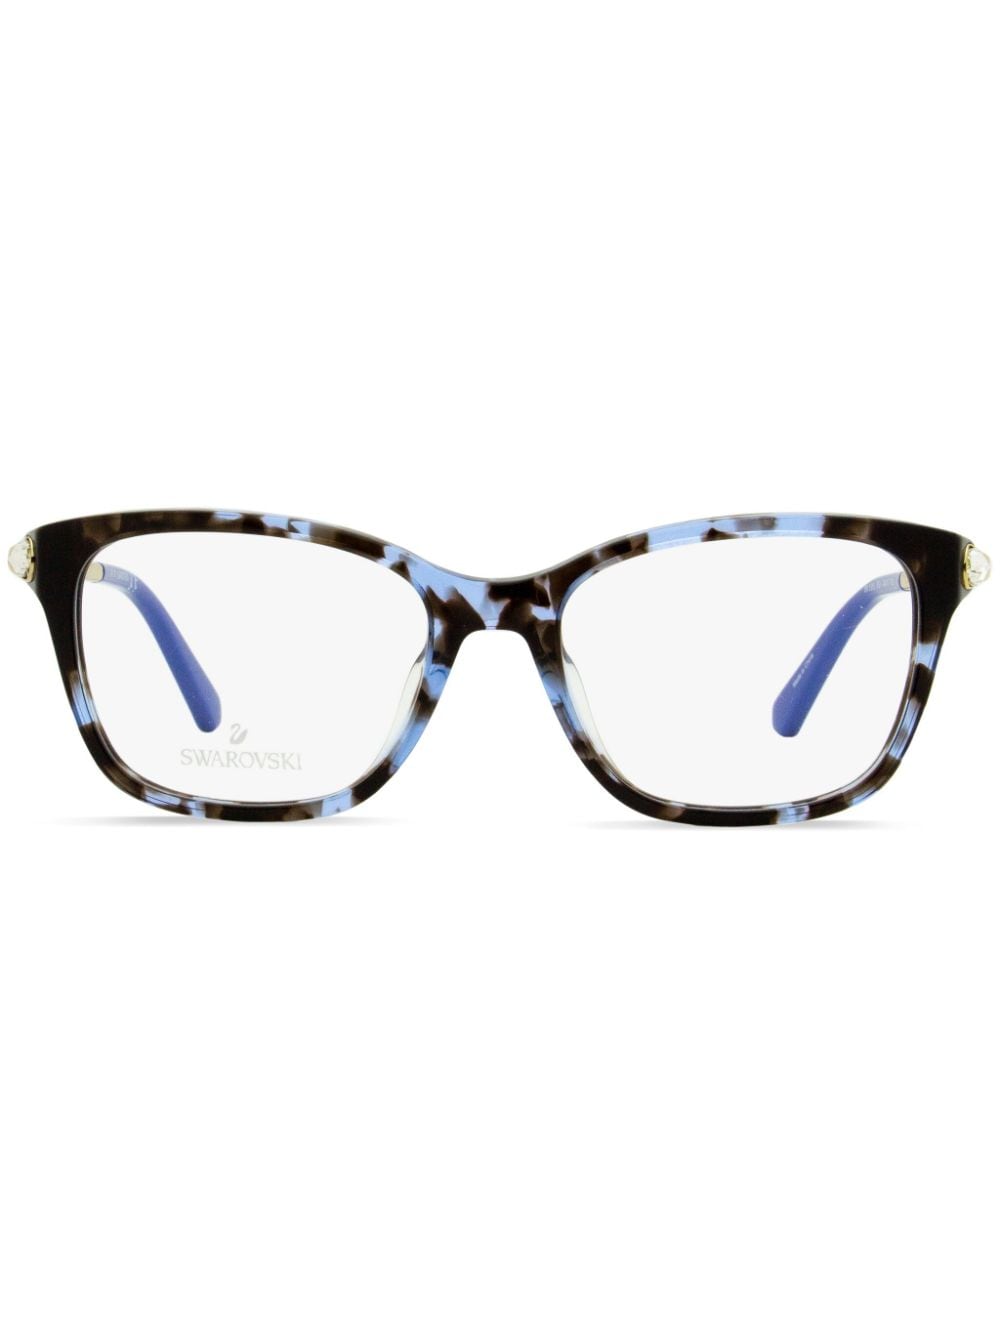 Swarovski Eckige Brille in Schildpattoptik - Blau von Swarovski